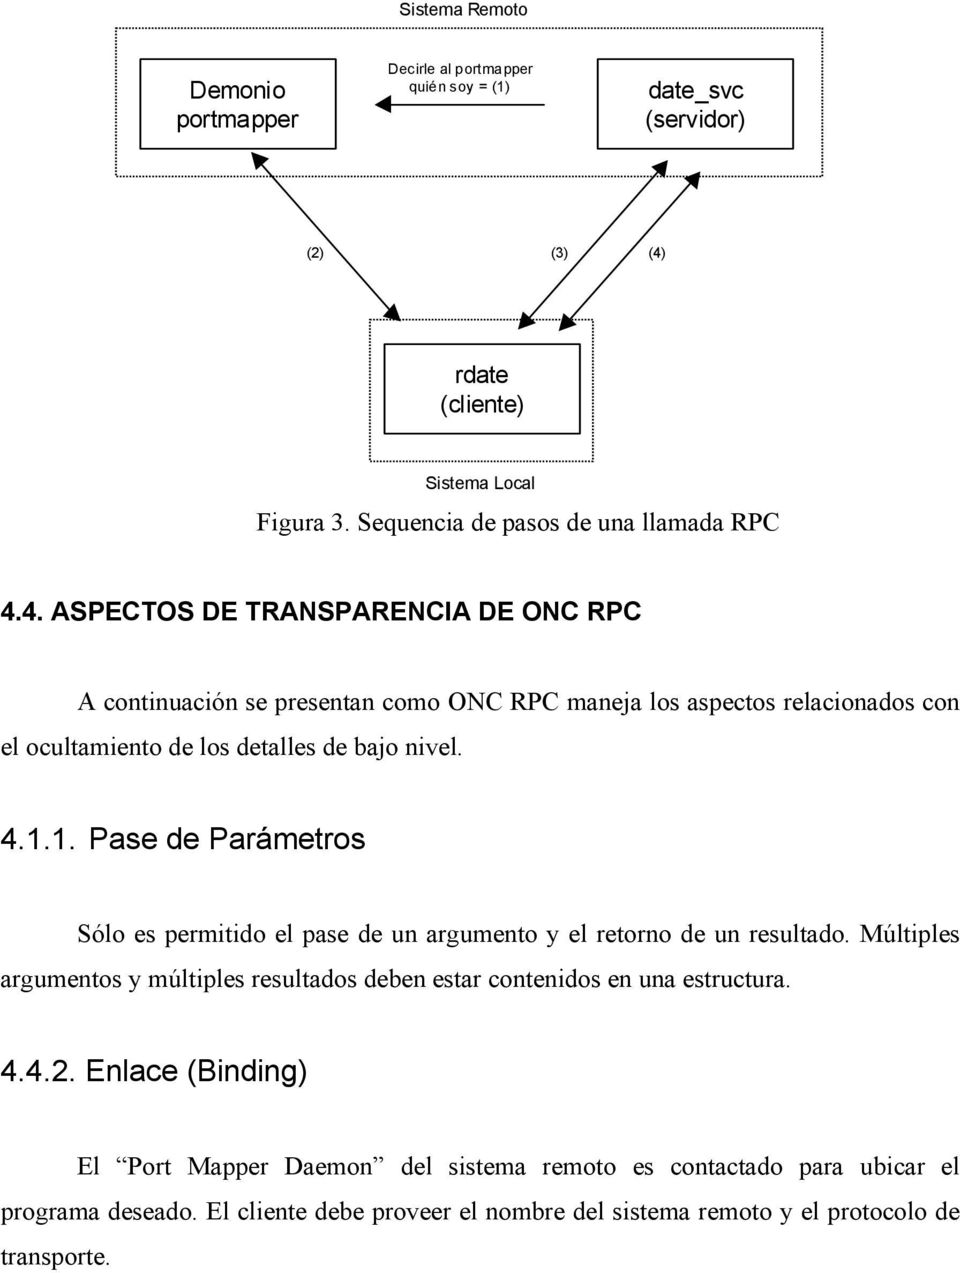 4. ASPECTOS DE TRANSPARENCIA DE ONC RPC A continuación se presentan como ONC RPC maneja los aspectos relacionados con el ocultamiento de los detalles de bajo nivel. 4.1.